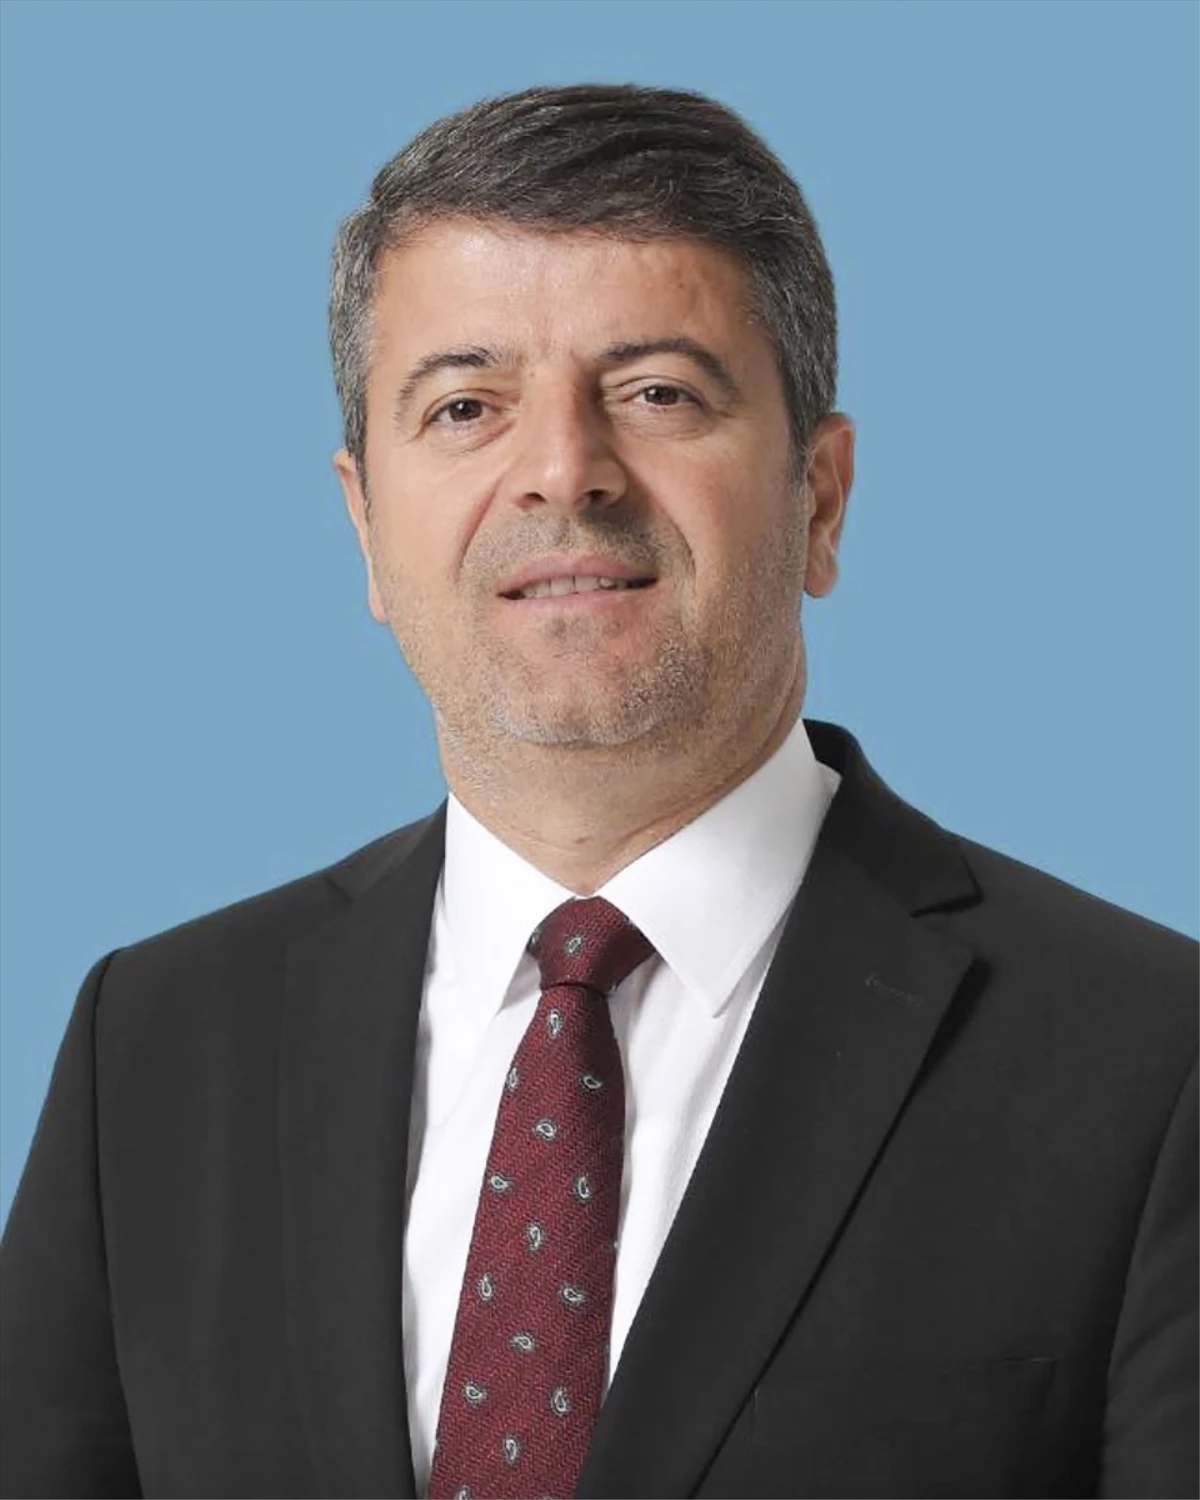 Adıyaman Belediye Başkanlığını CHP Adayı Abdurrahman Tutdere Kazandı